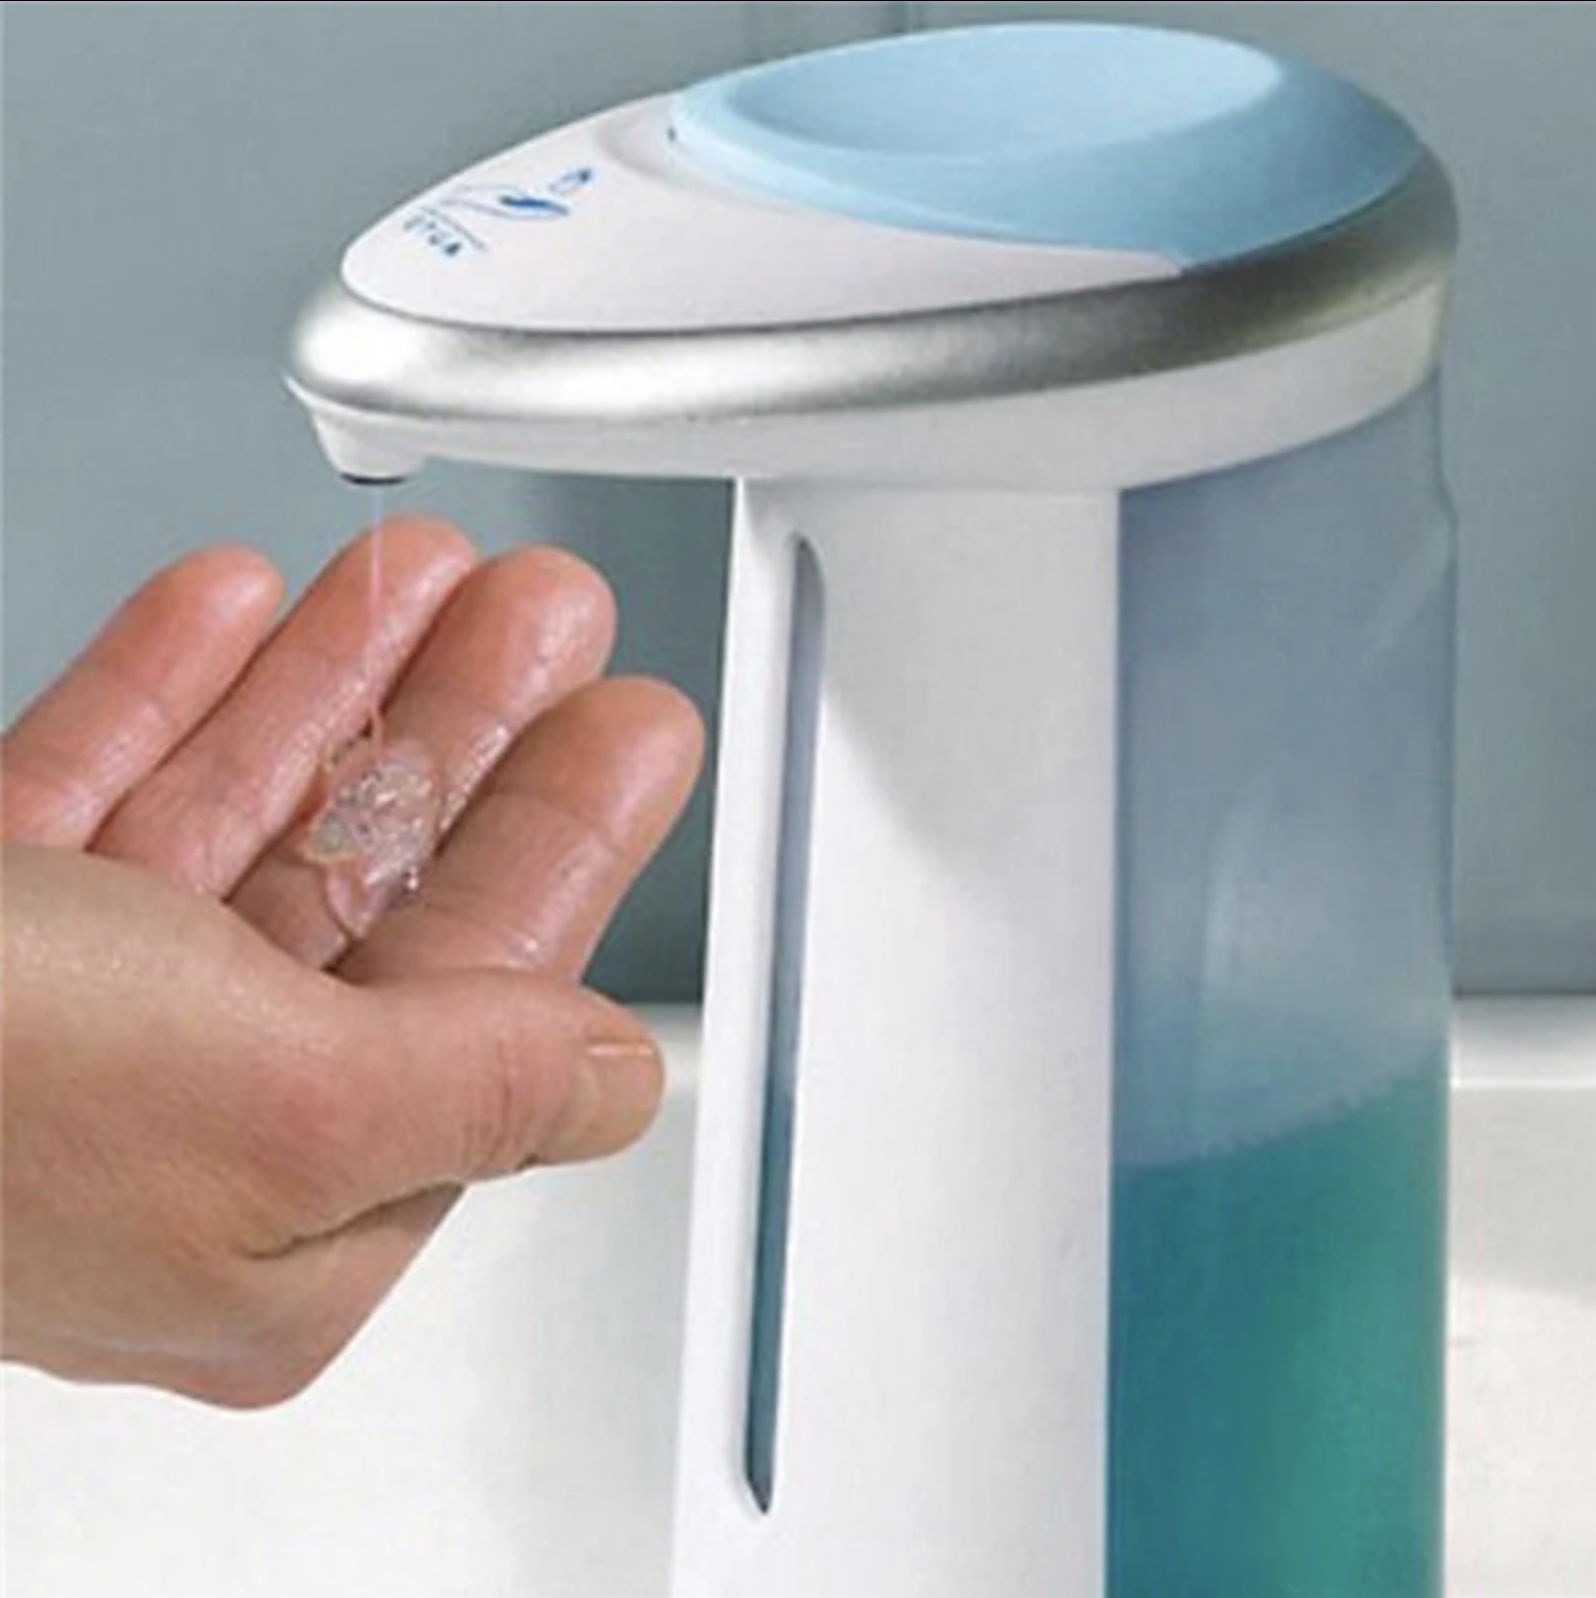 Дозатор для мыла сенсорный Soap Magic. Бесконтактный диспенсер для мыла Touchless Soap Dispenser. Сенсорная мыльница Soap Magic. Дозатор сенсорный Touchless. Купить автоматический диспенсер